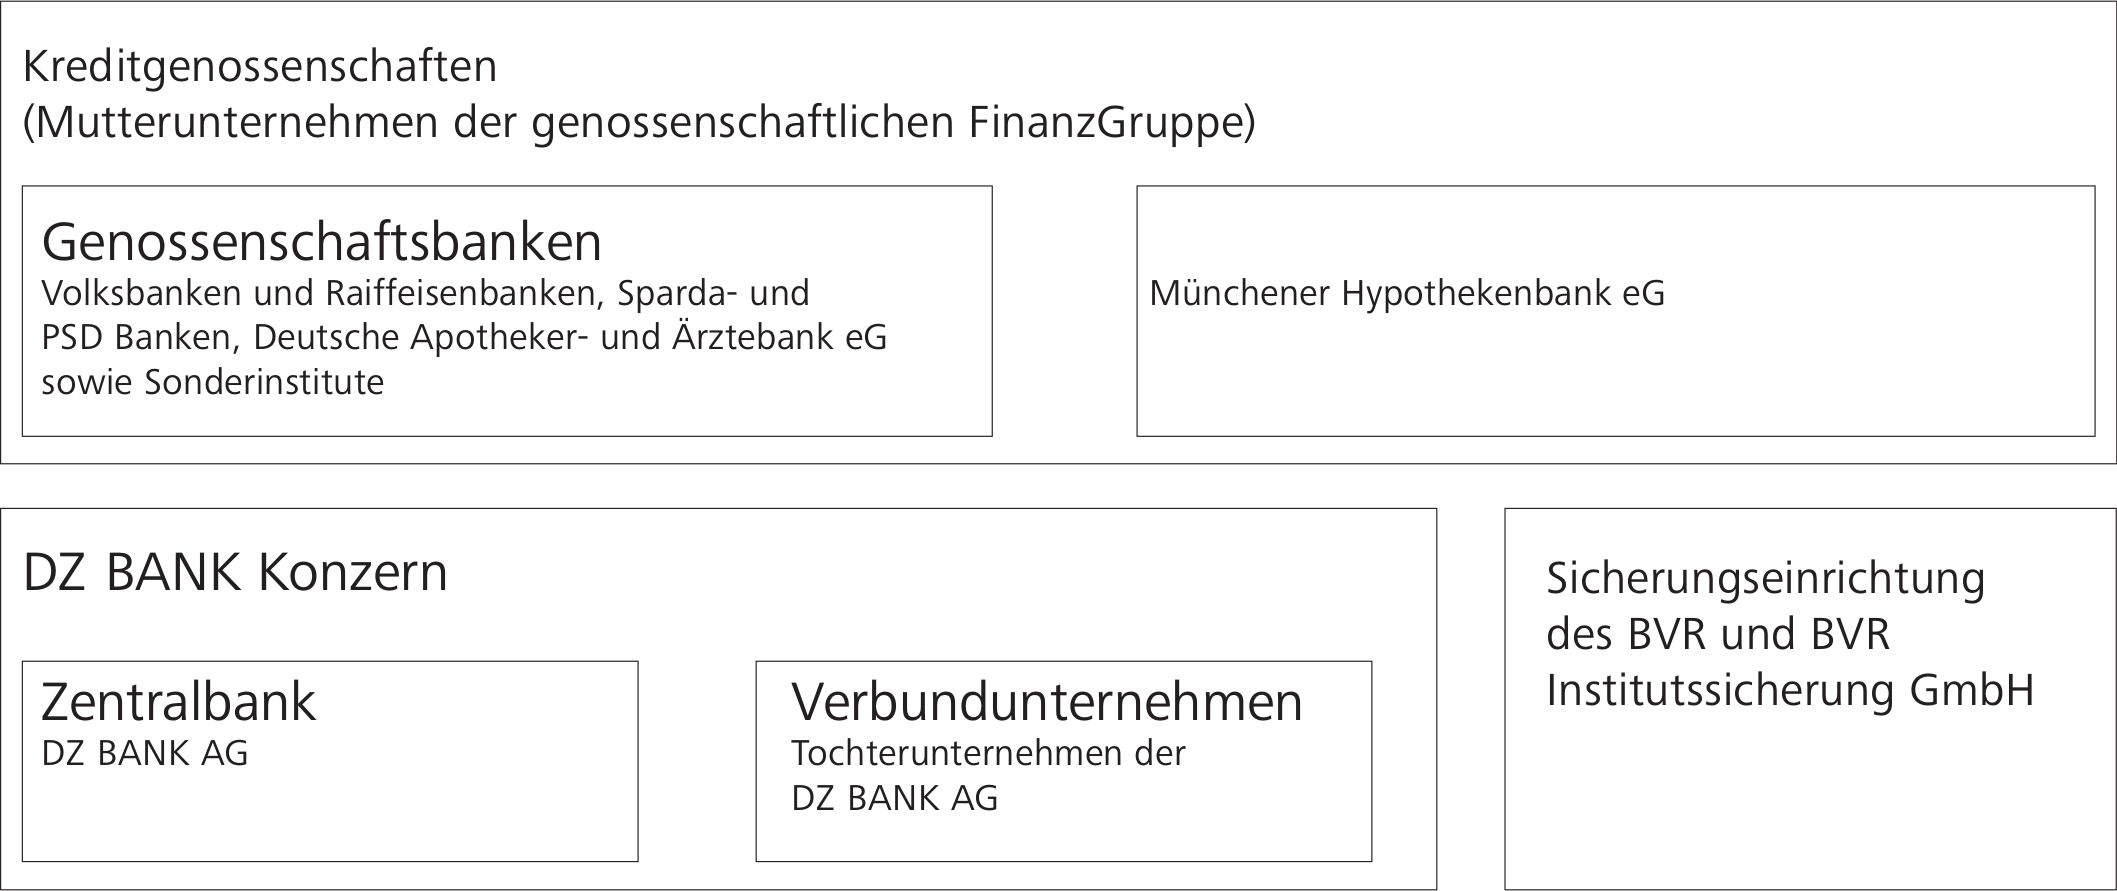 Genossenschaftliche FinanzGruppe Volksbanken Raiffeisenbanken